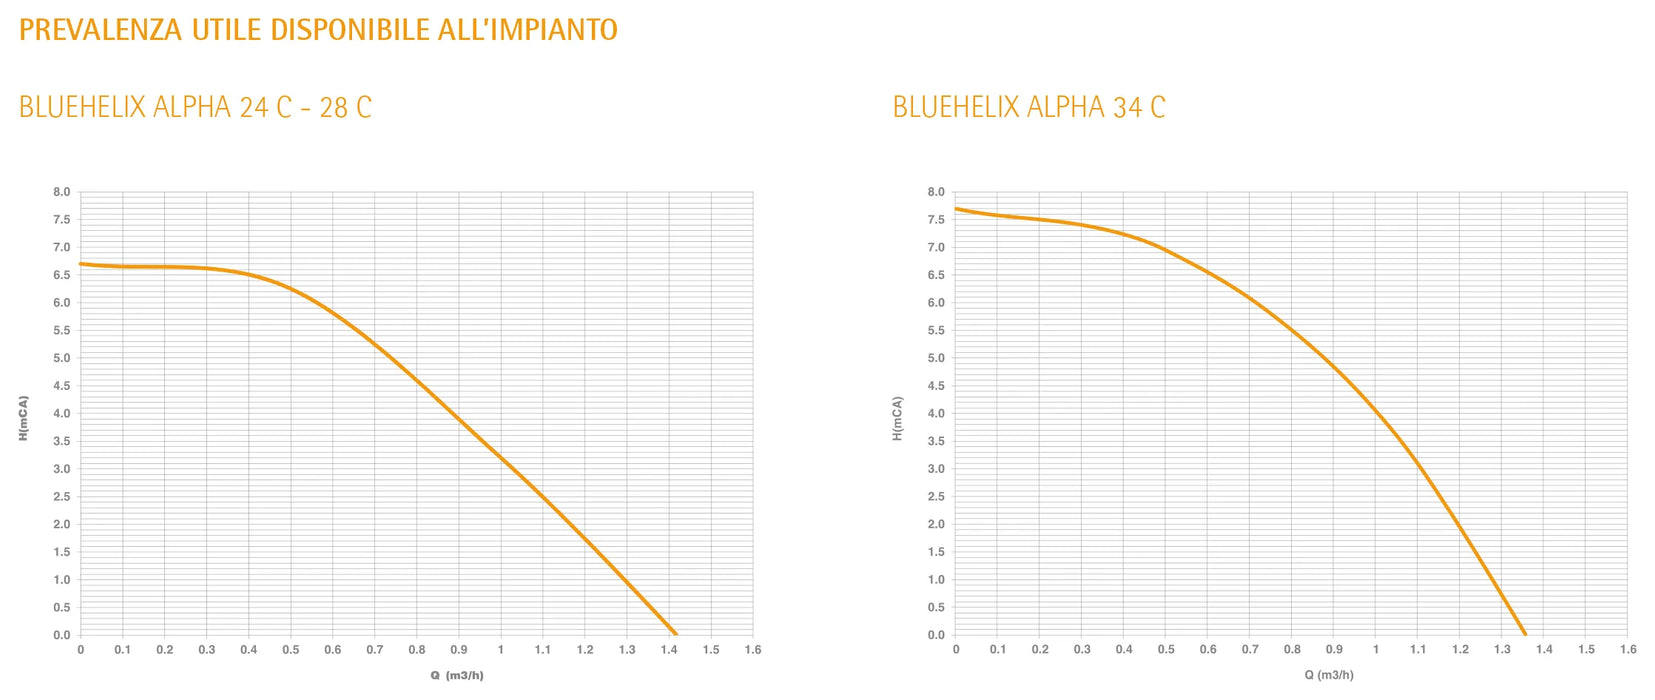 Ferroli - Bluehelix Alpha 24C Caldaia A Condensazione Metano Con Kit Fumi - Articolo: 0Tpf2Awa